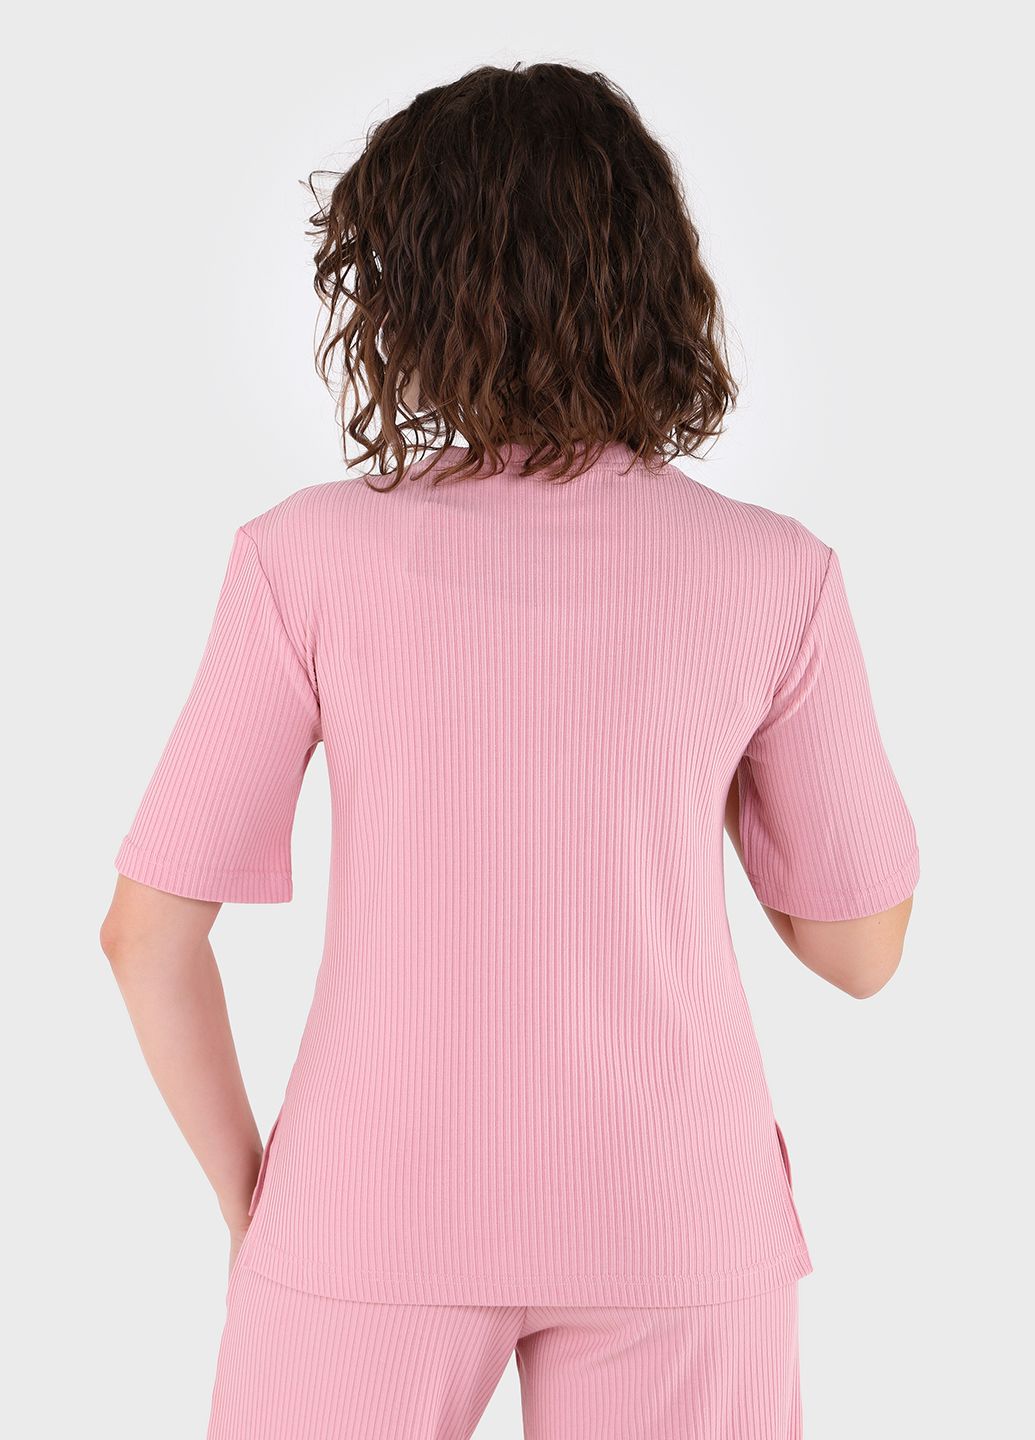 Купить Легкая футболка женская в рубчик Merlini Корунья 800000026 - Розовый, 42-44 в интернет-магазине